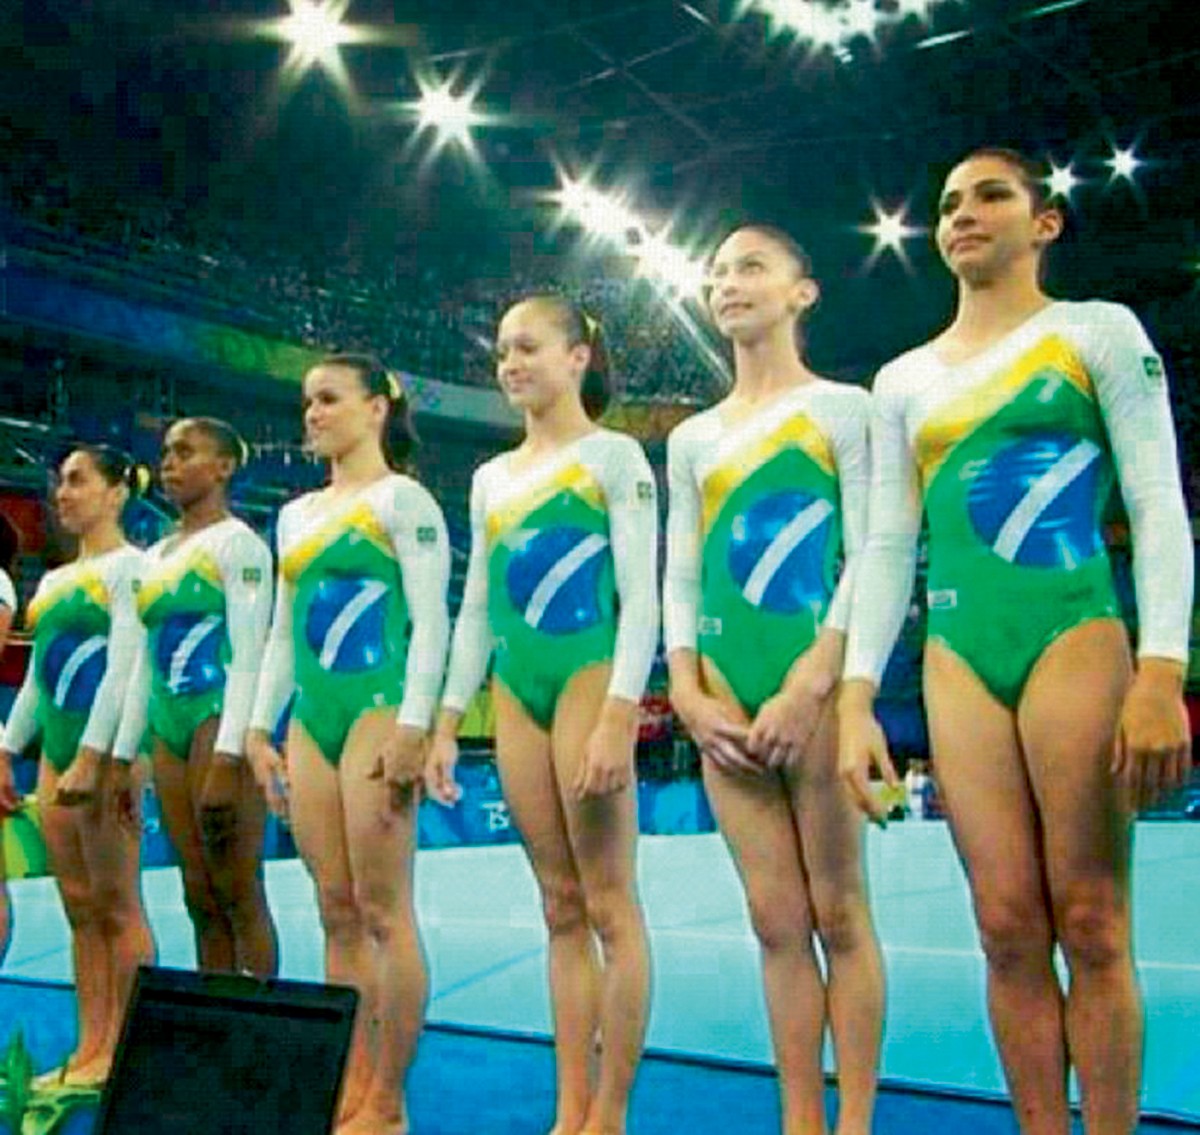 Lais Souza nas Olimpíadas de Pequim, em 2008, representando o Brasil como integrante da seleção de ginástica artística (Foto: Arquivo Pessoal)